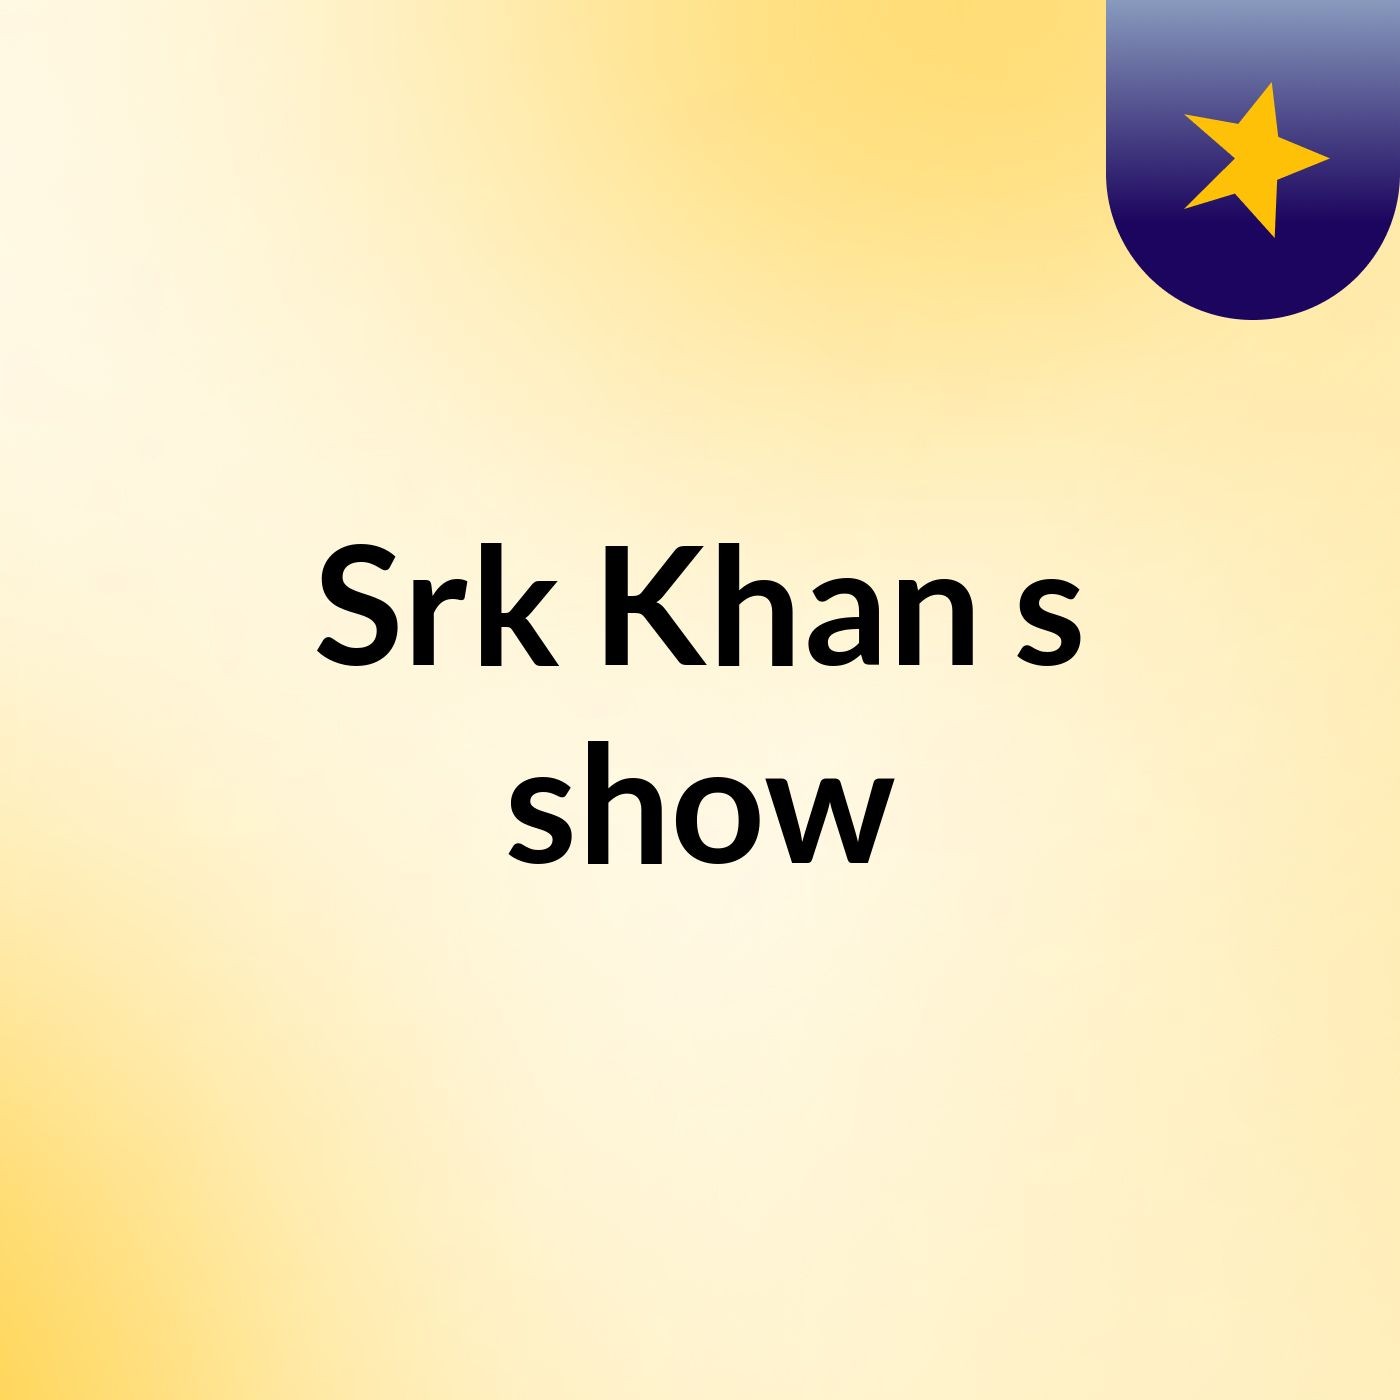 Srk Khan's show